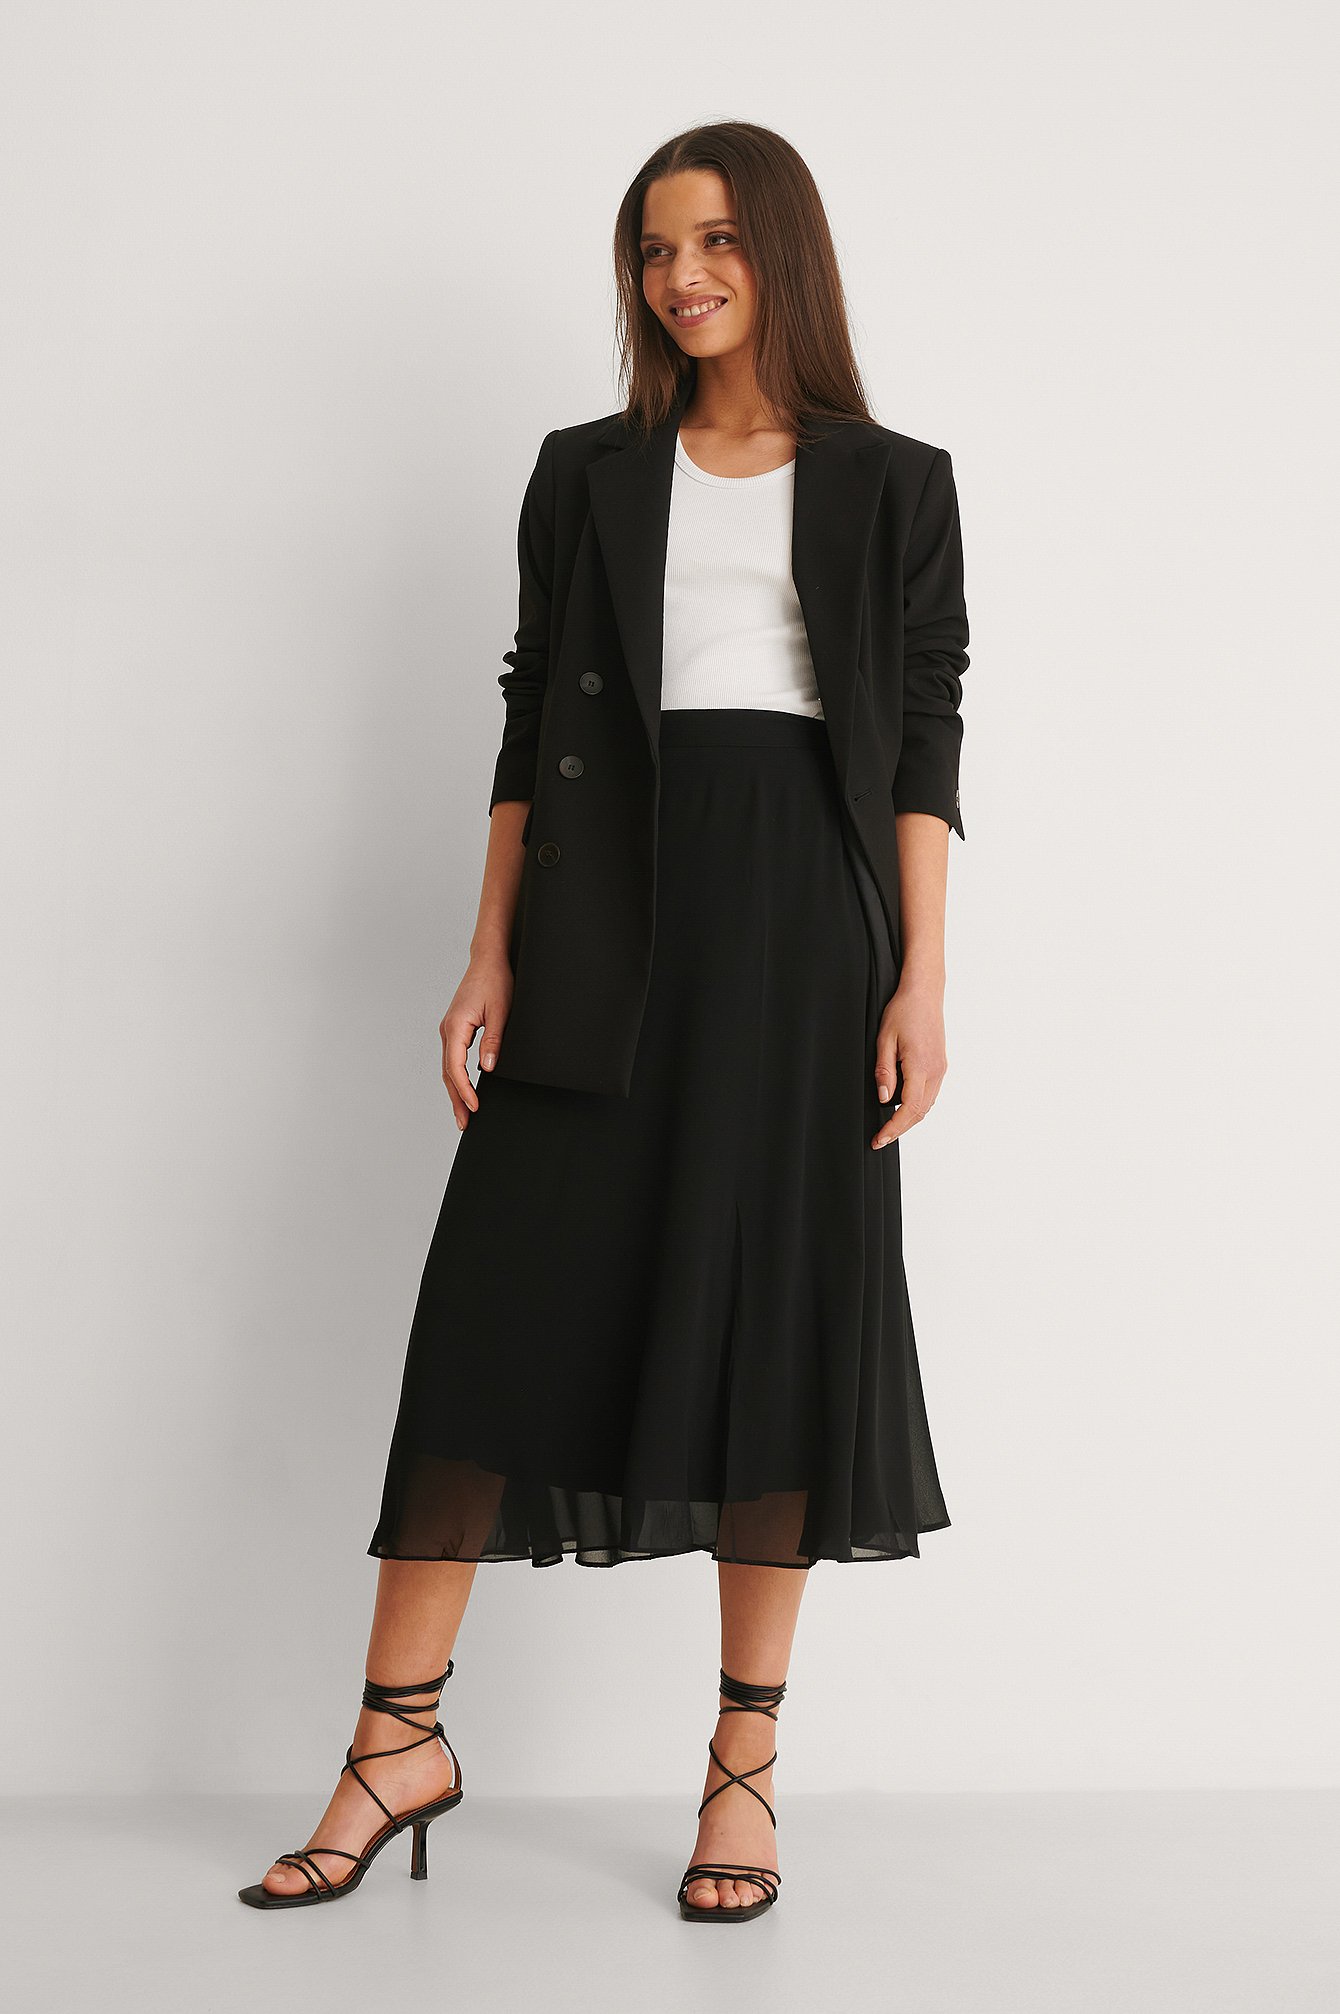 Black Overlap Skirt